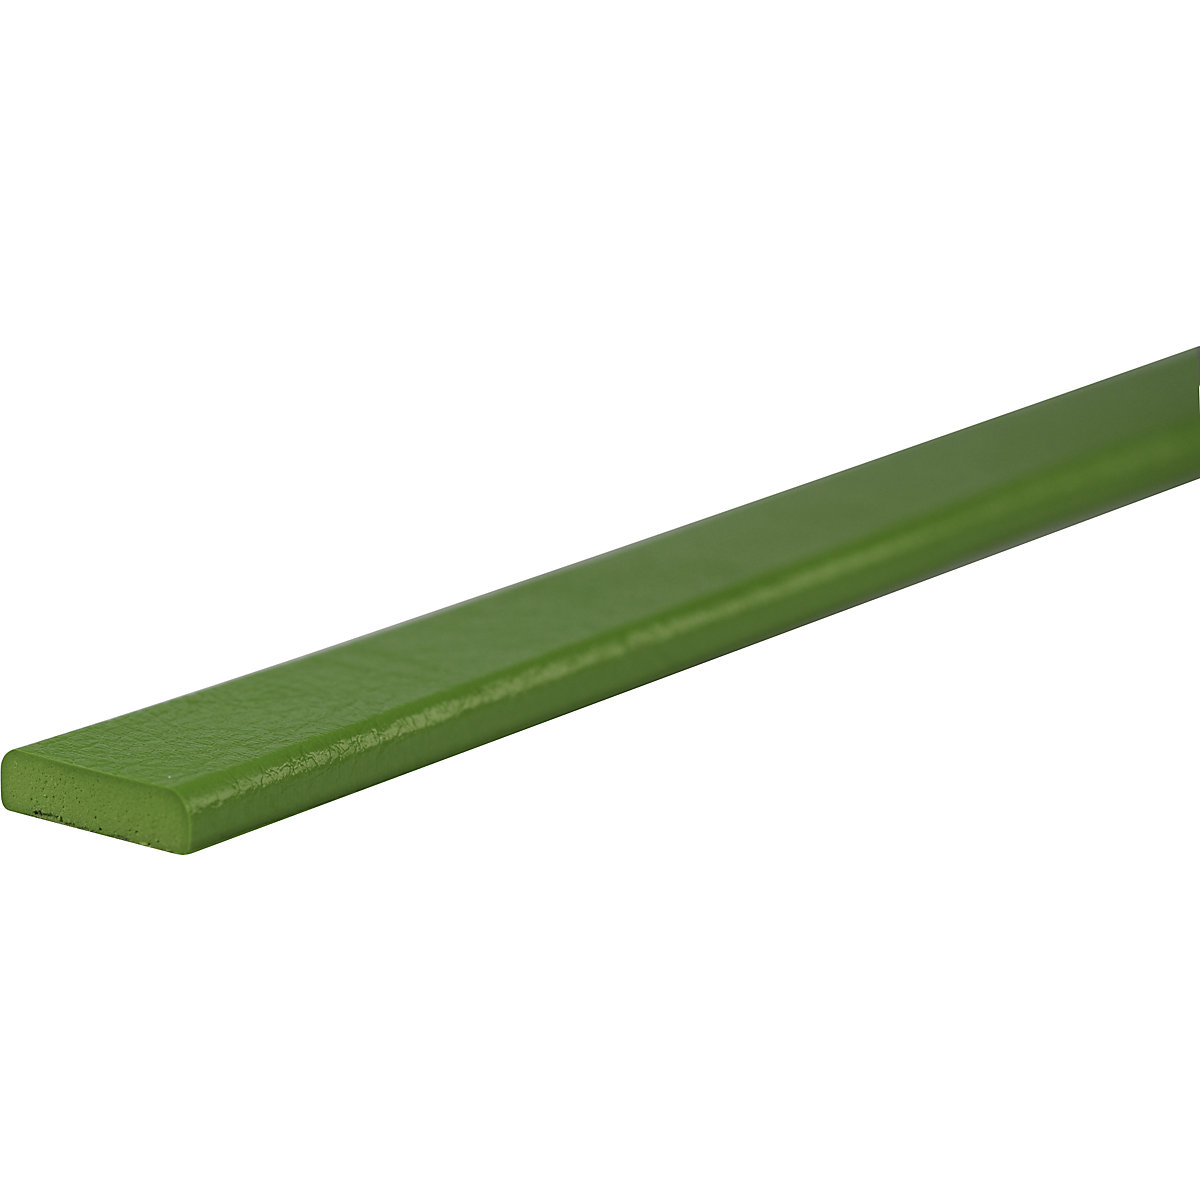 Protection des surfaces Knuffi® – SHG, type F, pièce de 1 m, vert